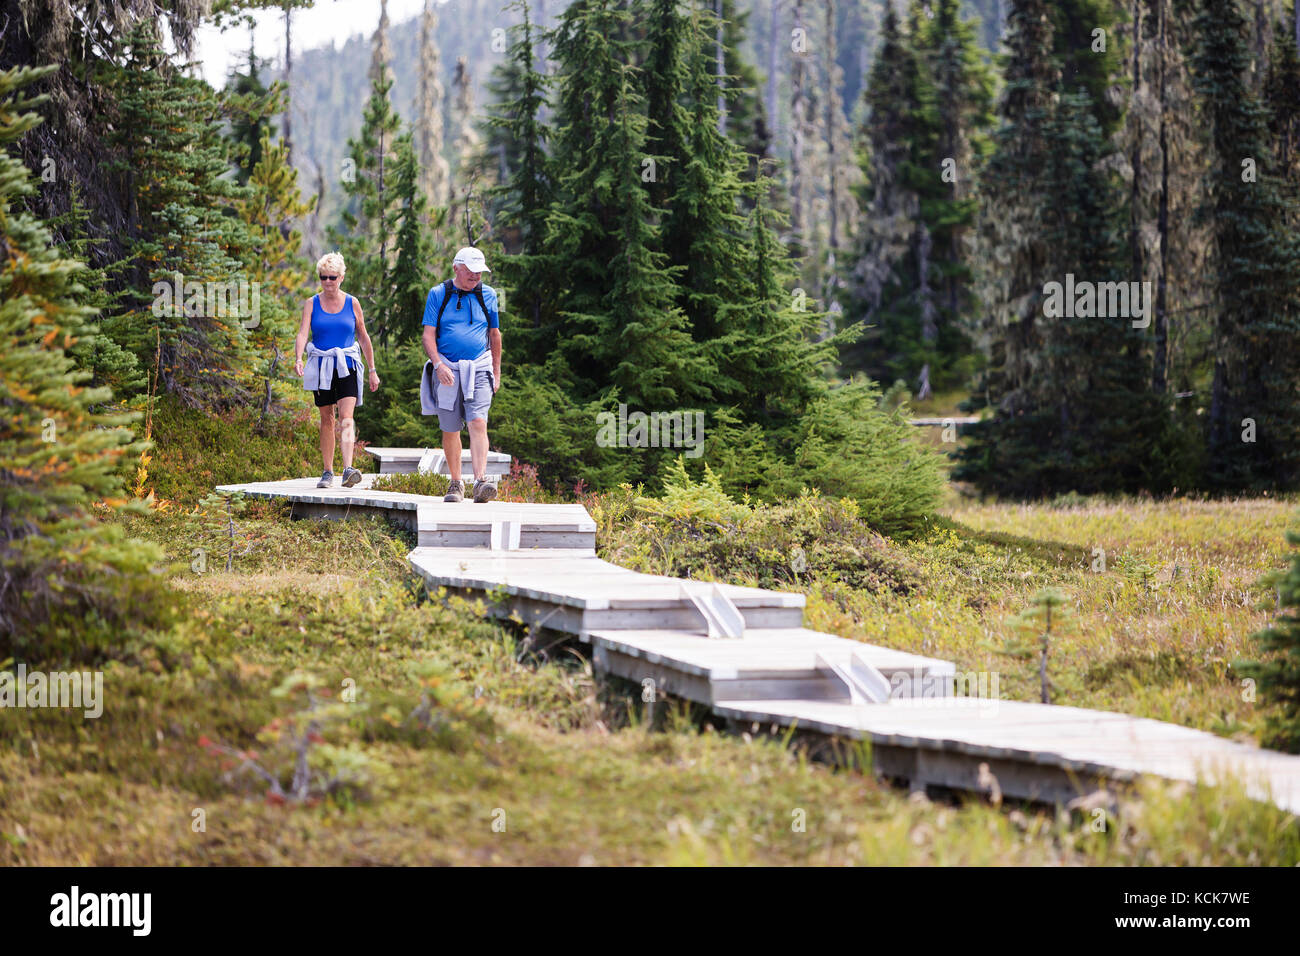 Ein älteres Paar geht entlang einer Reihe von Boardwalks, die für Tageswanderer gebaut wurden, die Paradise Meadows in der Nähe von Mt. Washington. Paradise Meadows, Strathcona Park, Vancouver Island, British Columbia, Kanada. Stockfoto